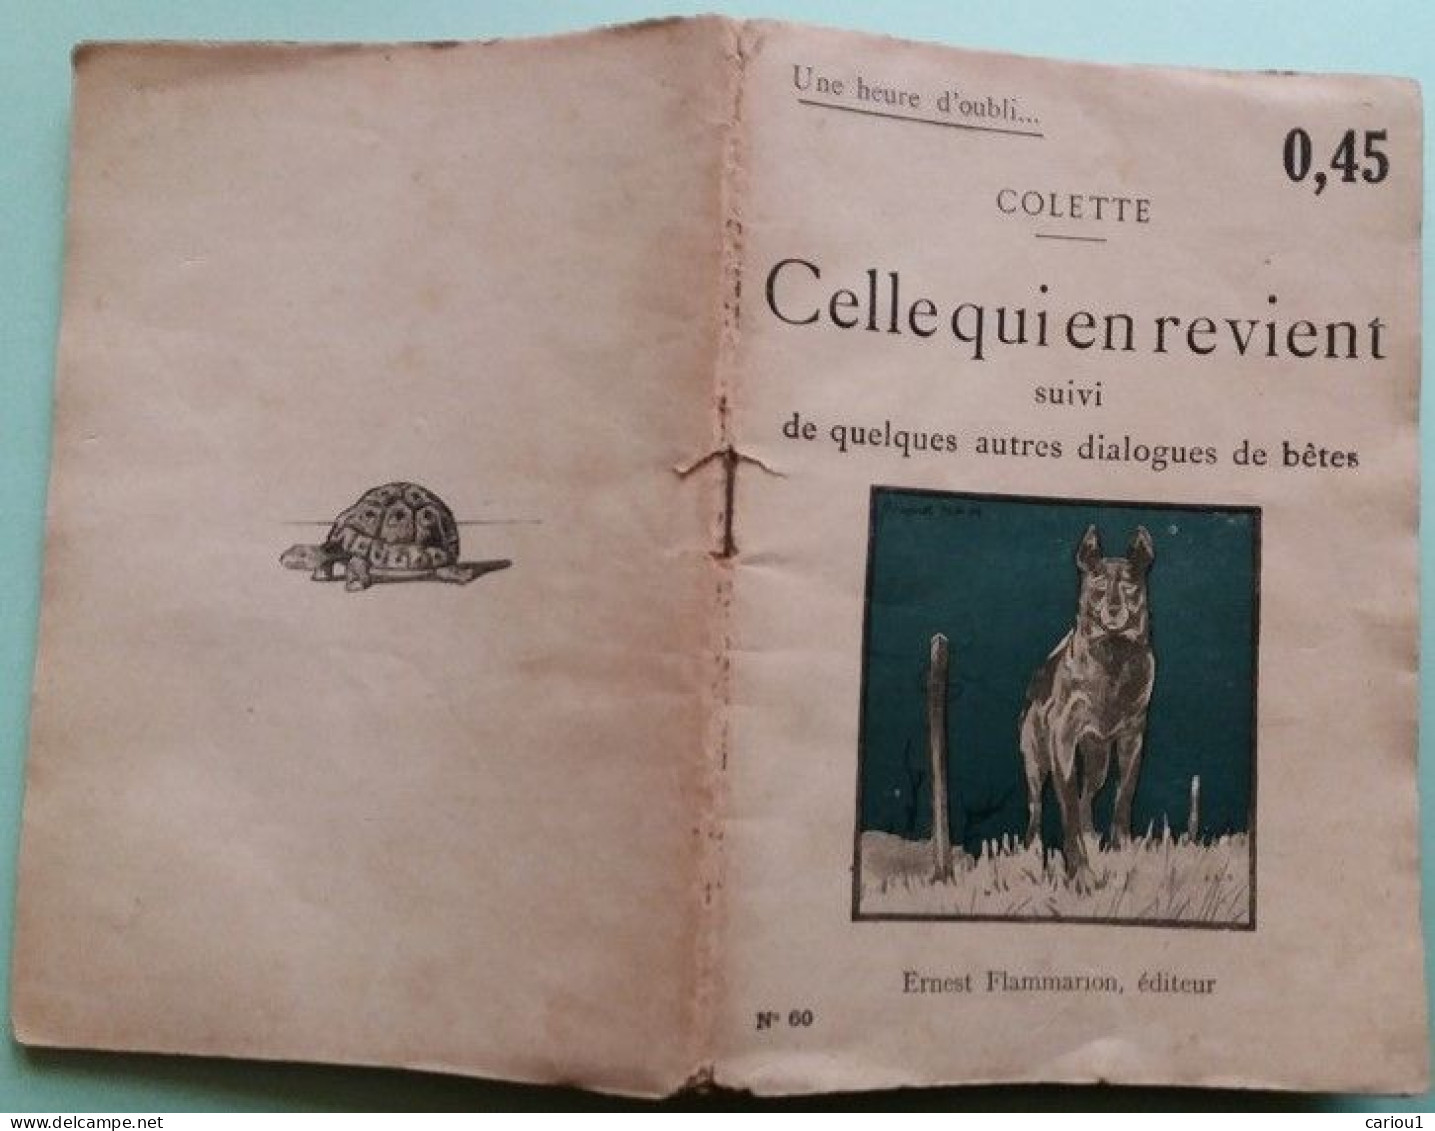 C1 COLETTE - CELLE QUI REVIENT Dialogues Betes EO 1921 RARE Jacques NAM Port Inclus France - 1901-1940